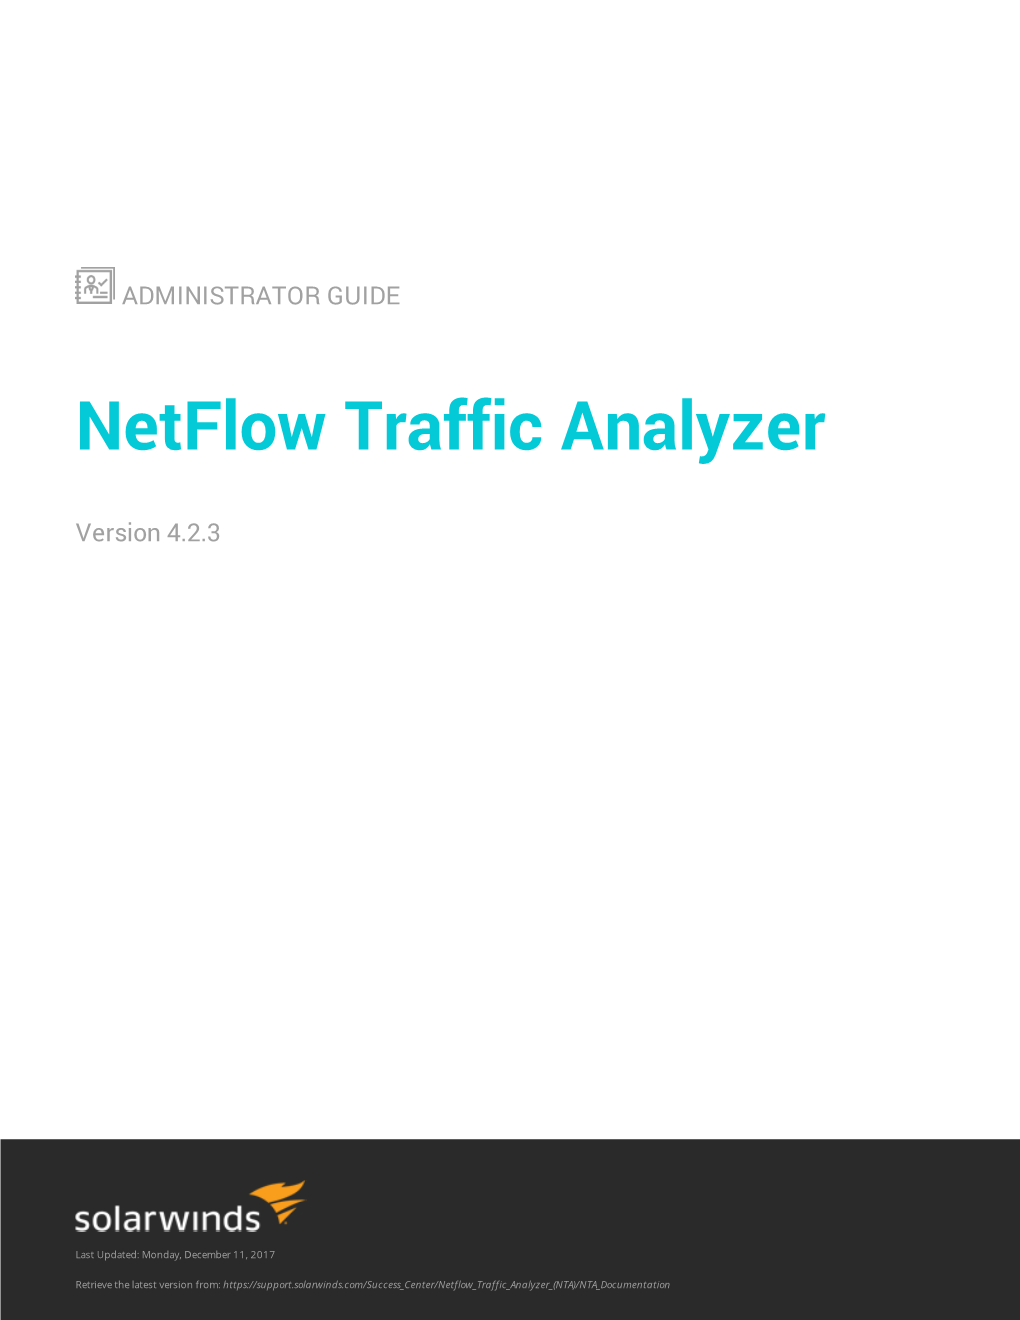 Solarwinds Netflow Traffic Analyzer Administrator Guide